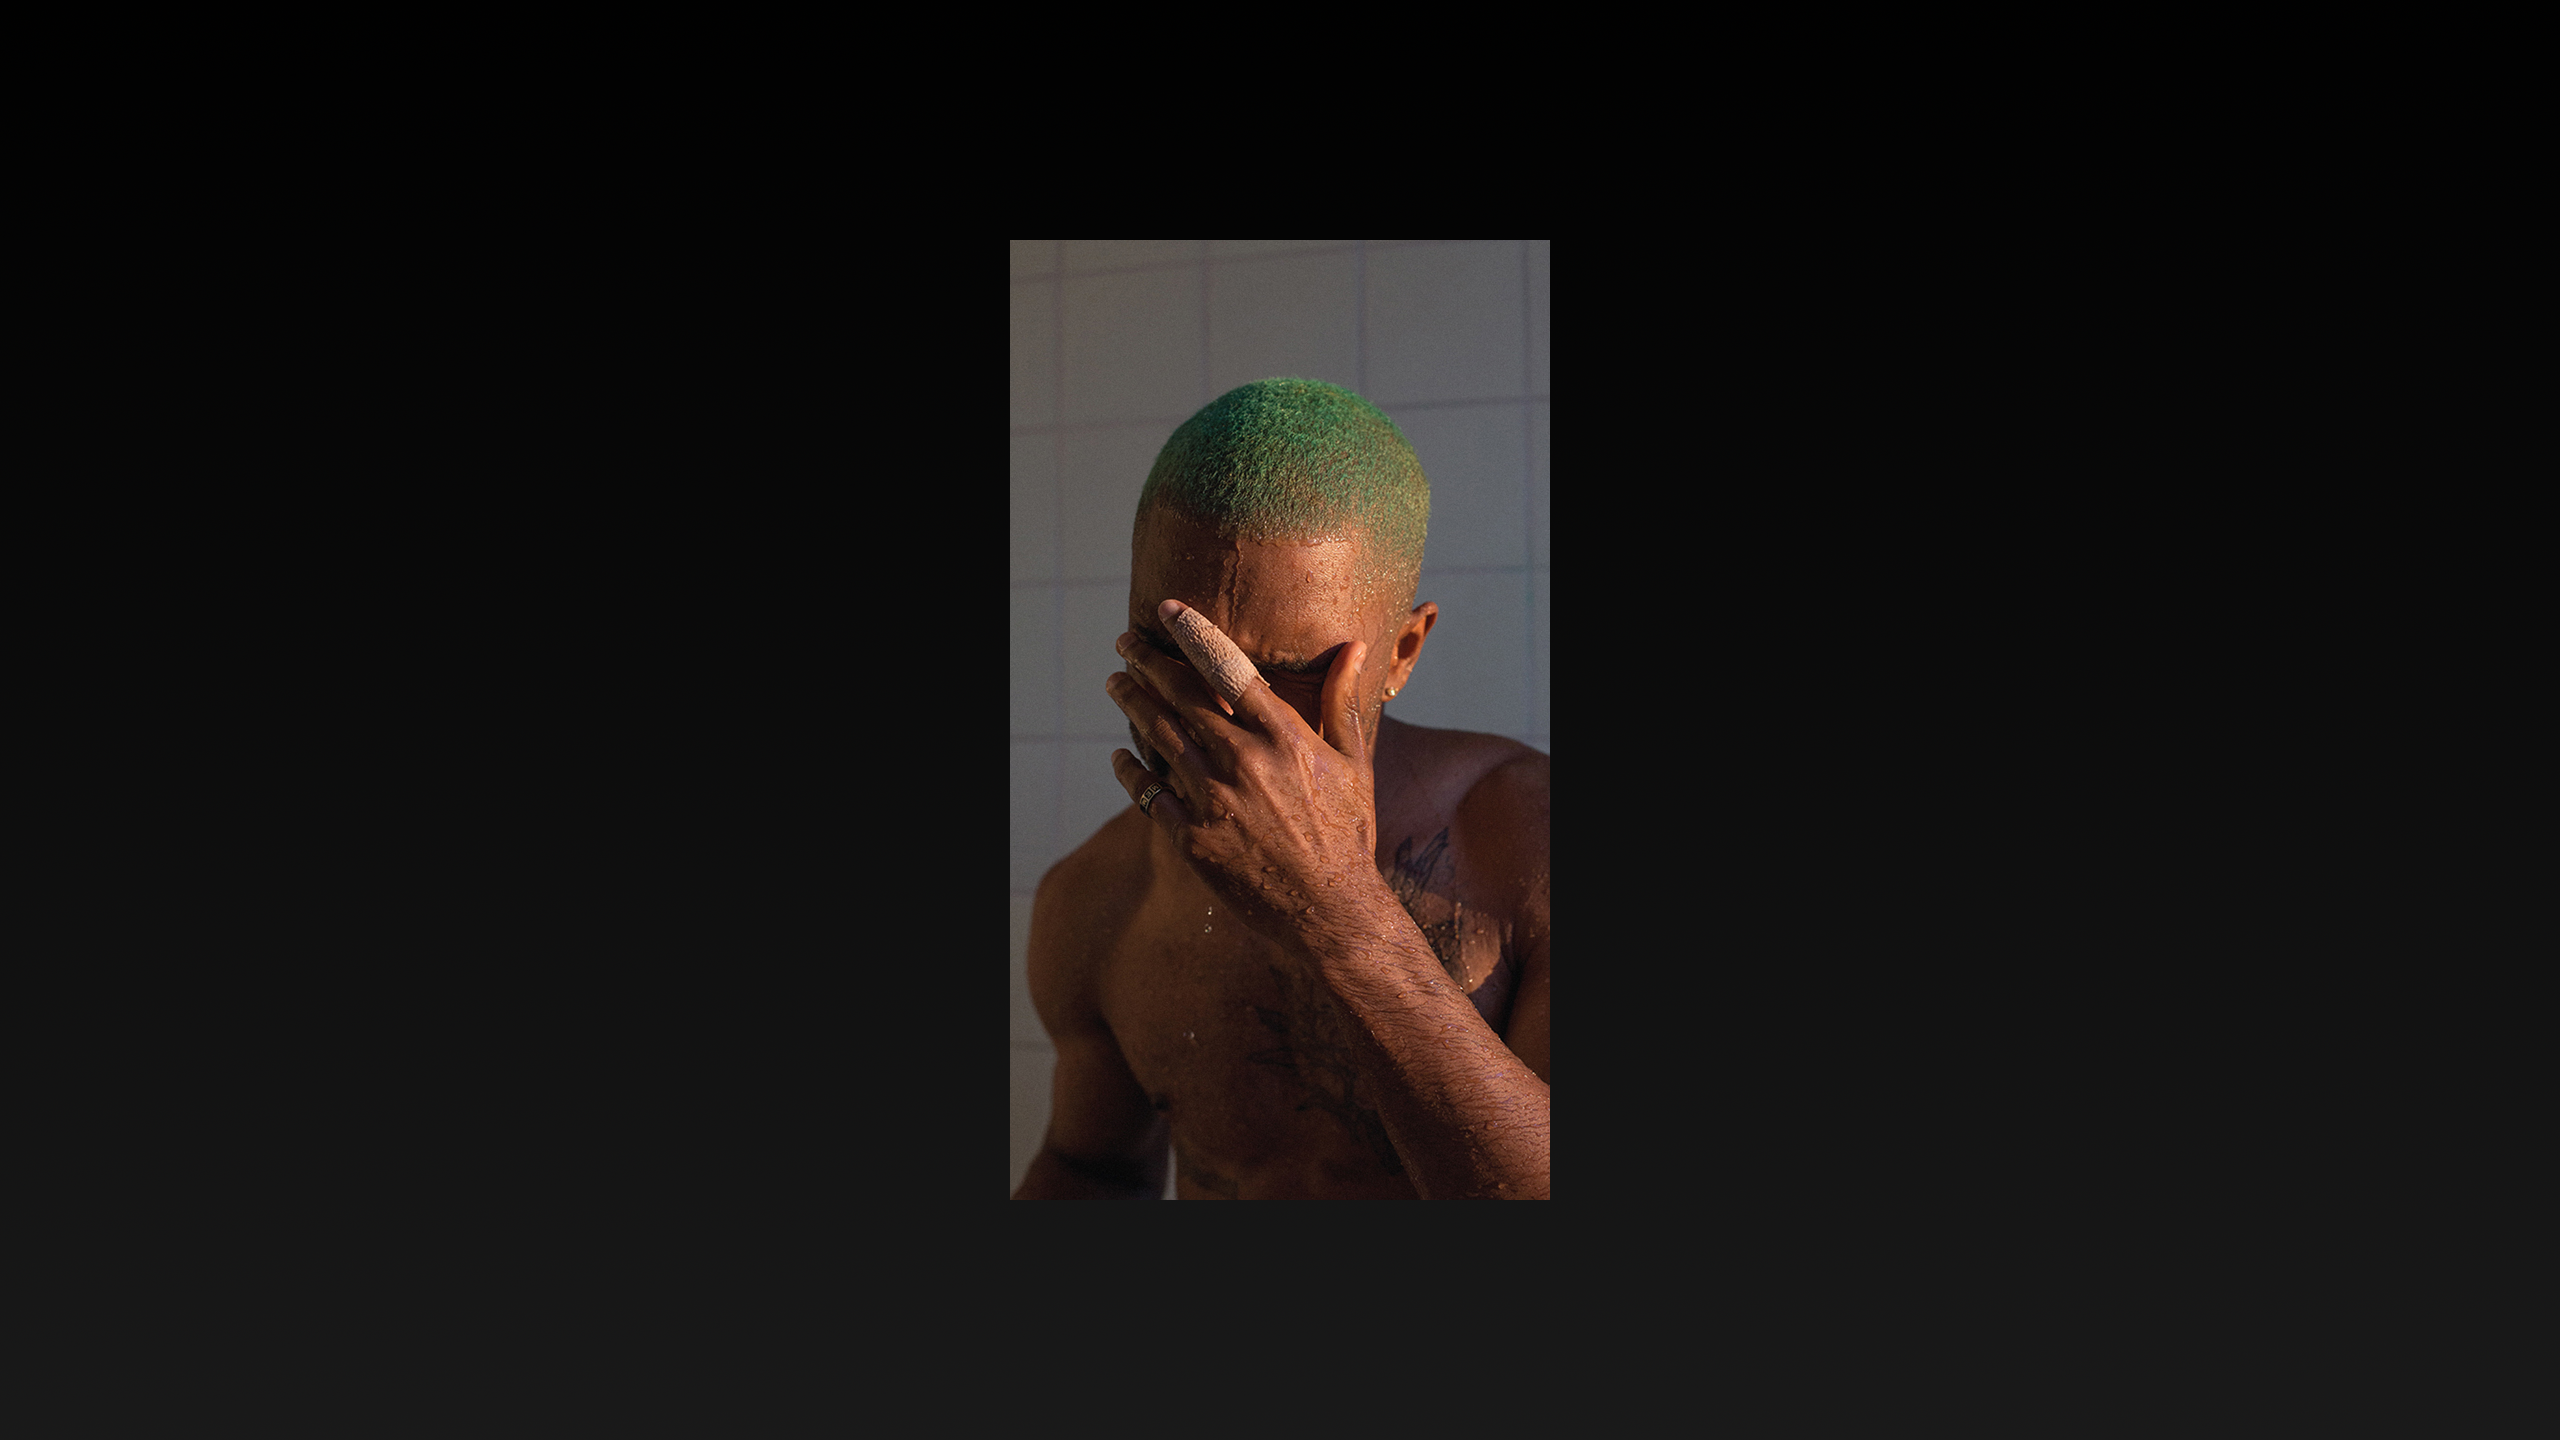 frank ocean full album download blonde free